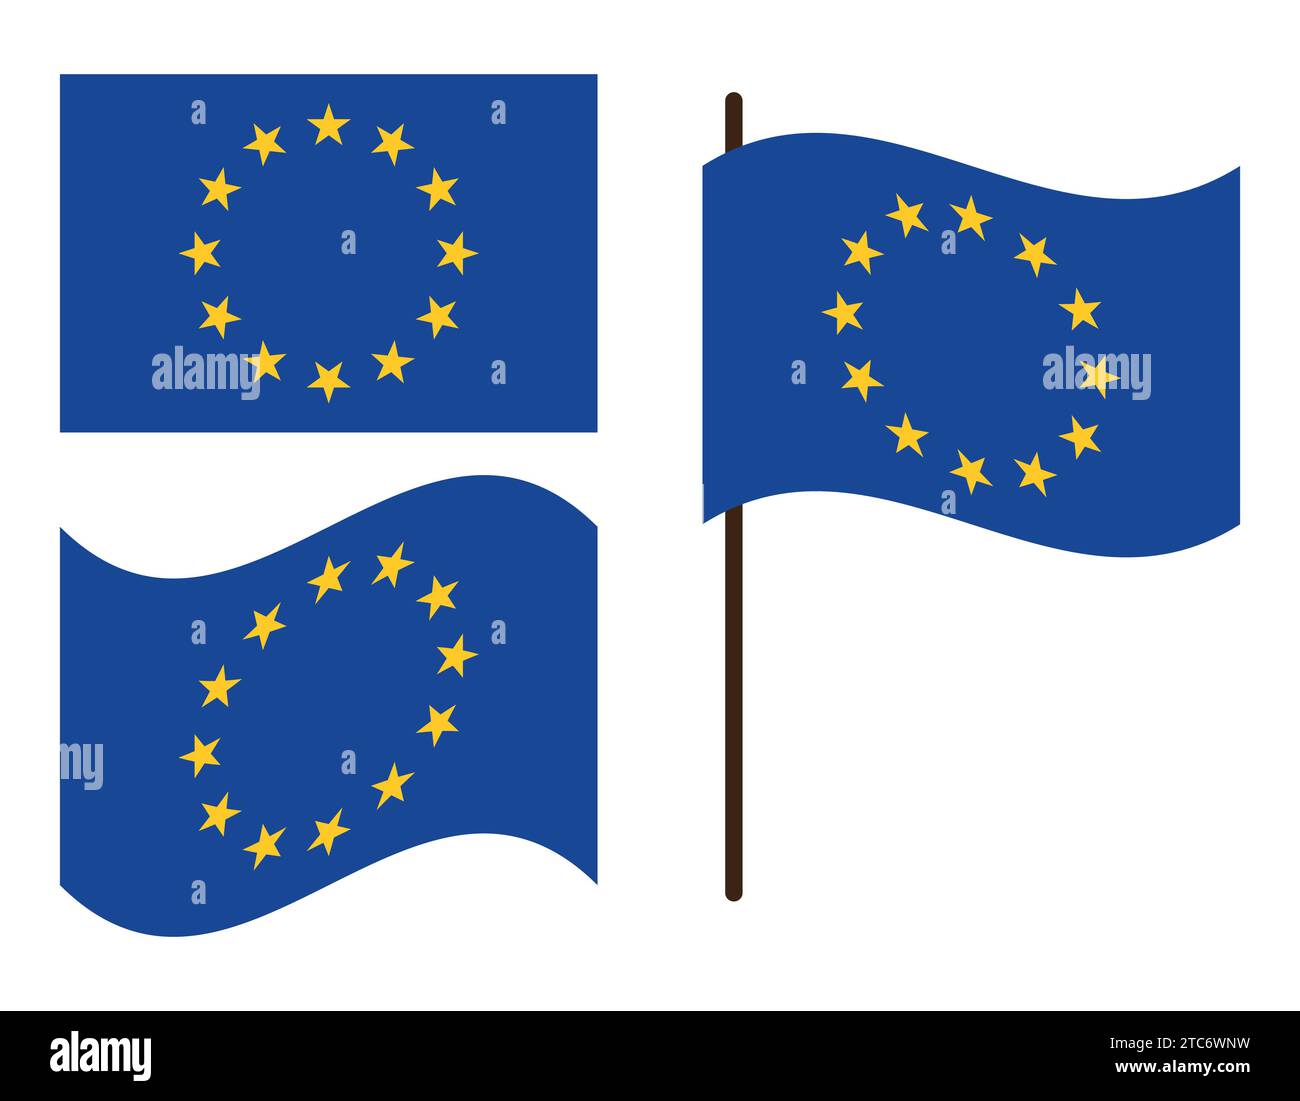 Flagge der europã¤ischen union Stock-Vektorgrafiken kaufen - Alamy